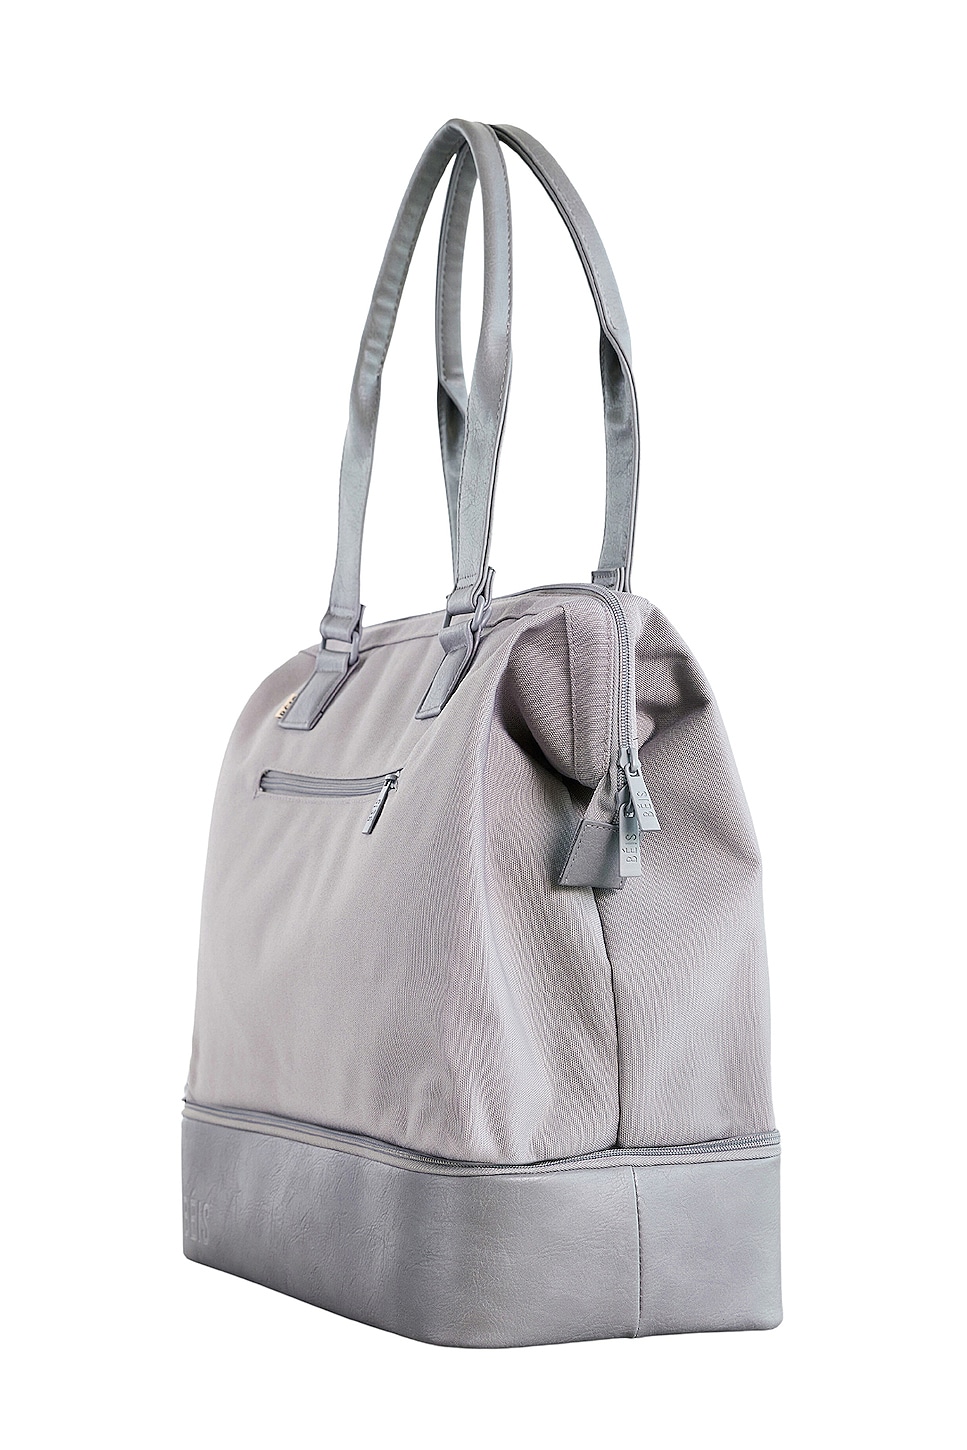 BEIS Mini Weekend Bag in Gray | REVOLVE